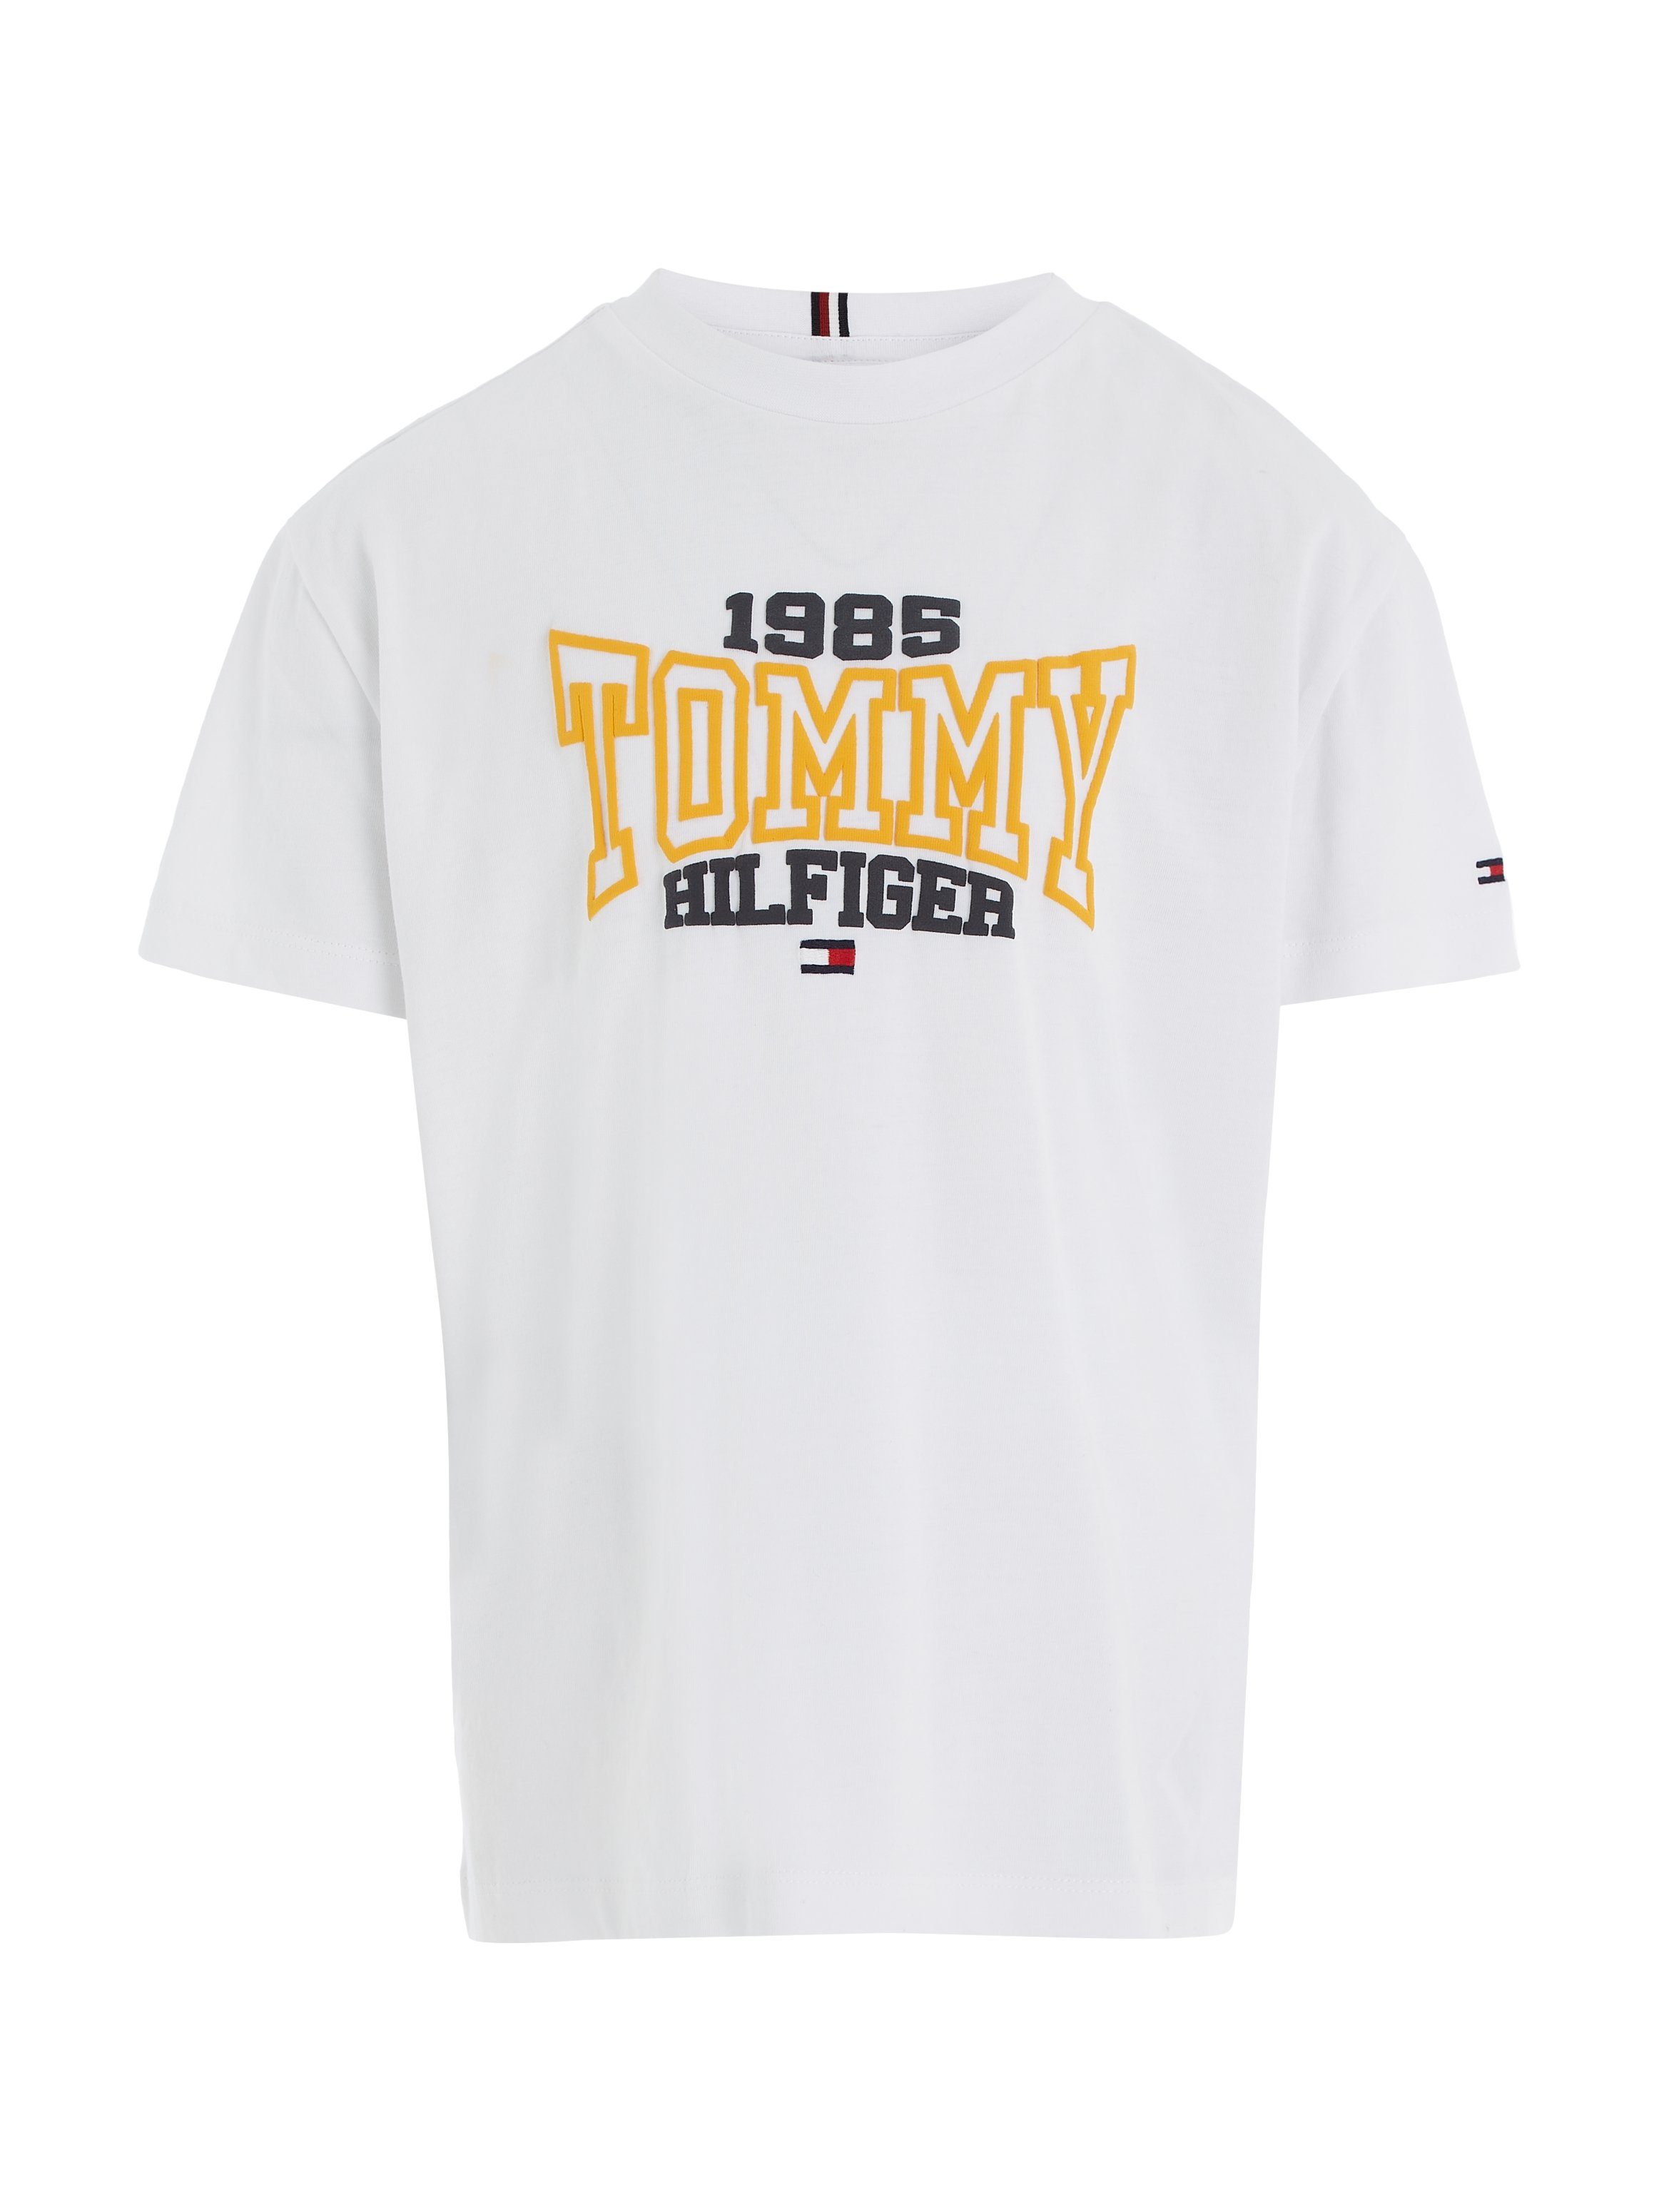 Tommy Hilfiger modischem 1985 1985 TOMMY Hilfgier TEE VARSITY T-Shirt S/S White Print Tommy Varsity mit